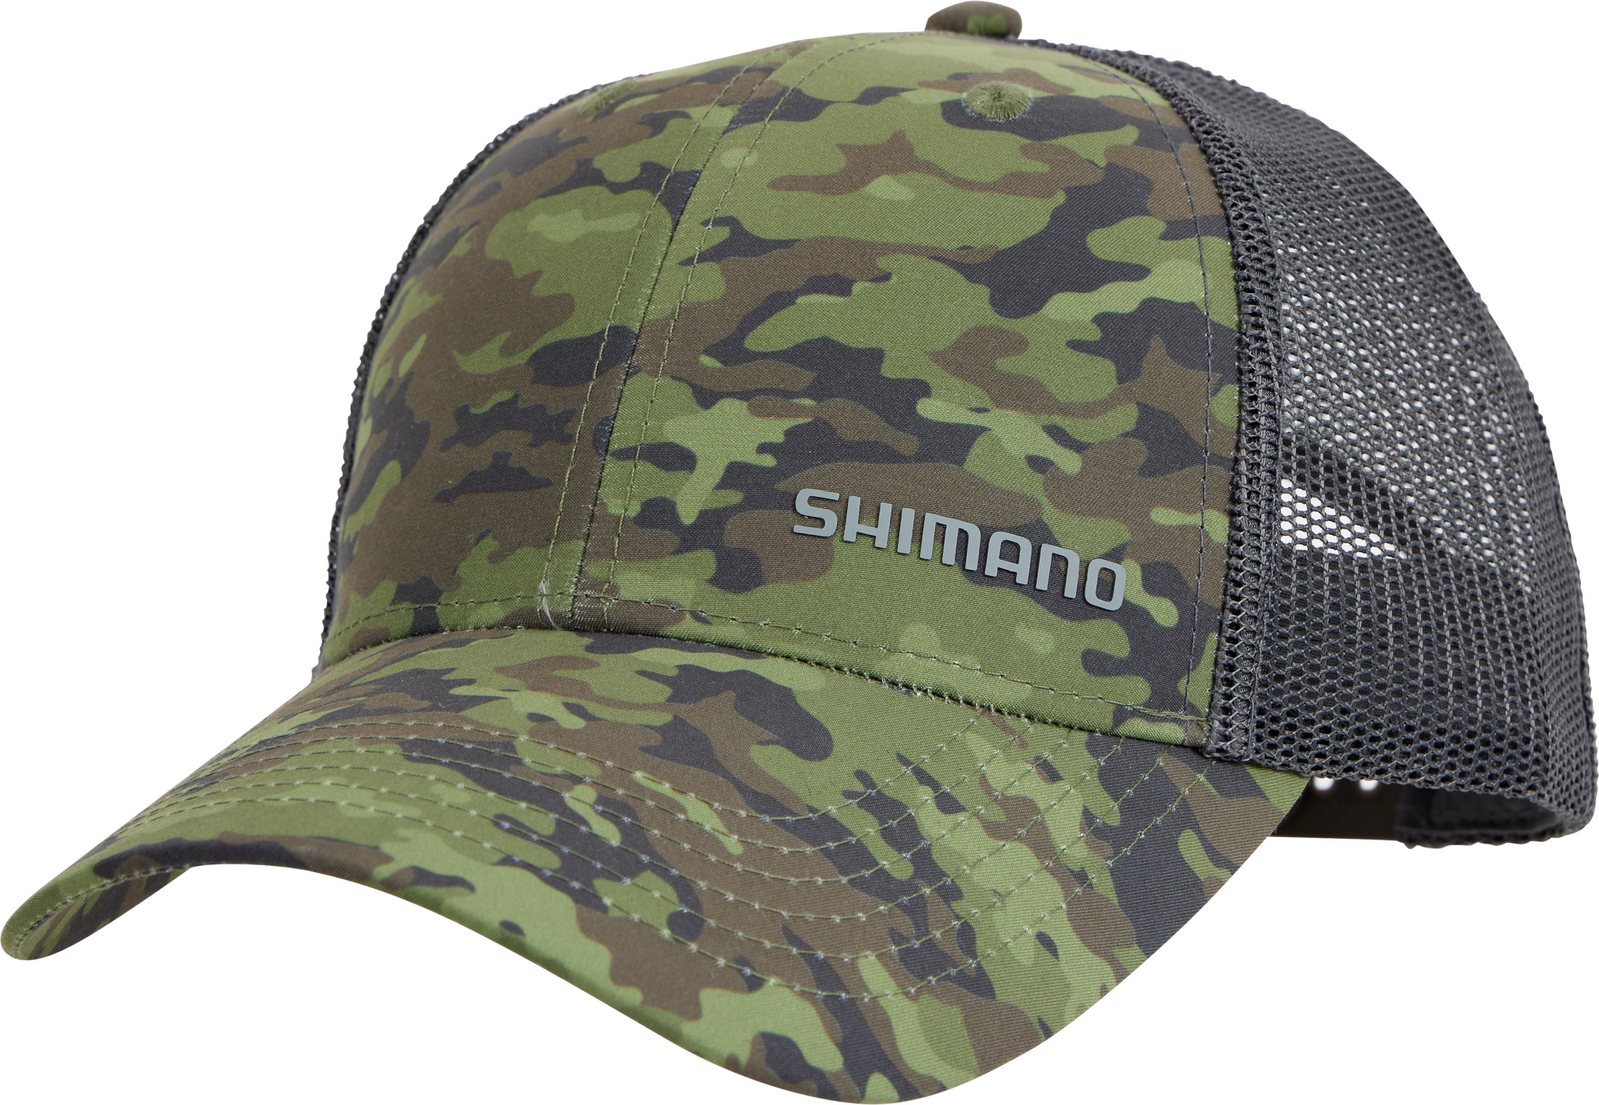 SHIMANO TRUCKER CAP - MOSS CAMO